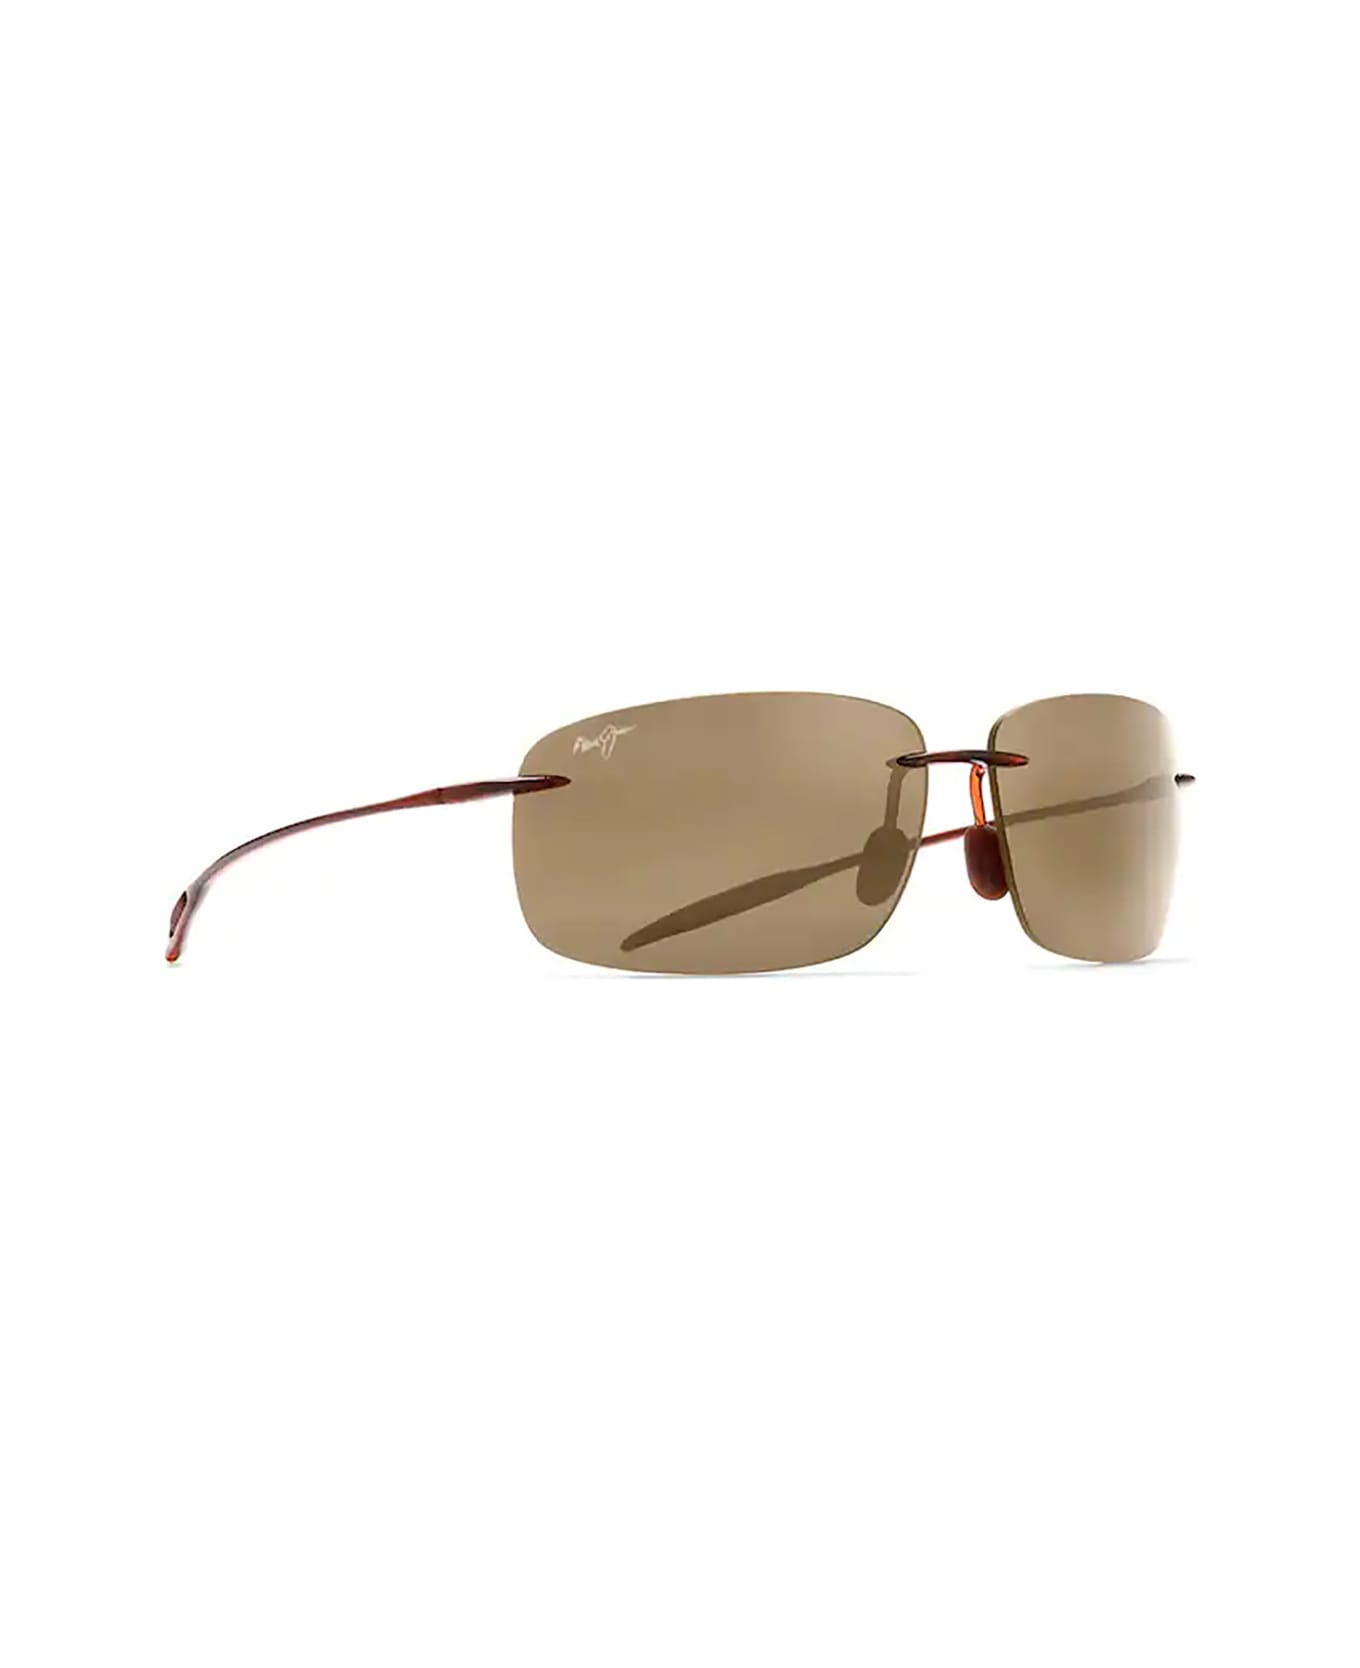 Maui Jim BREAKWALL Sunglasses - Hcl Breakwall Rootbeer サングラス